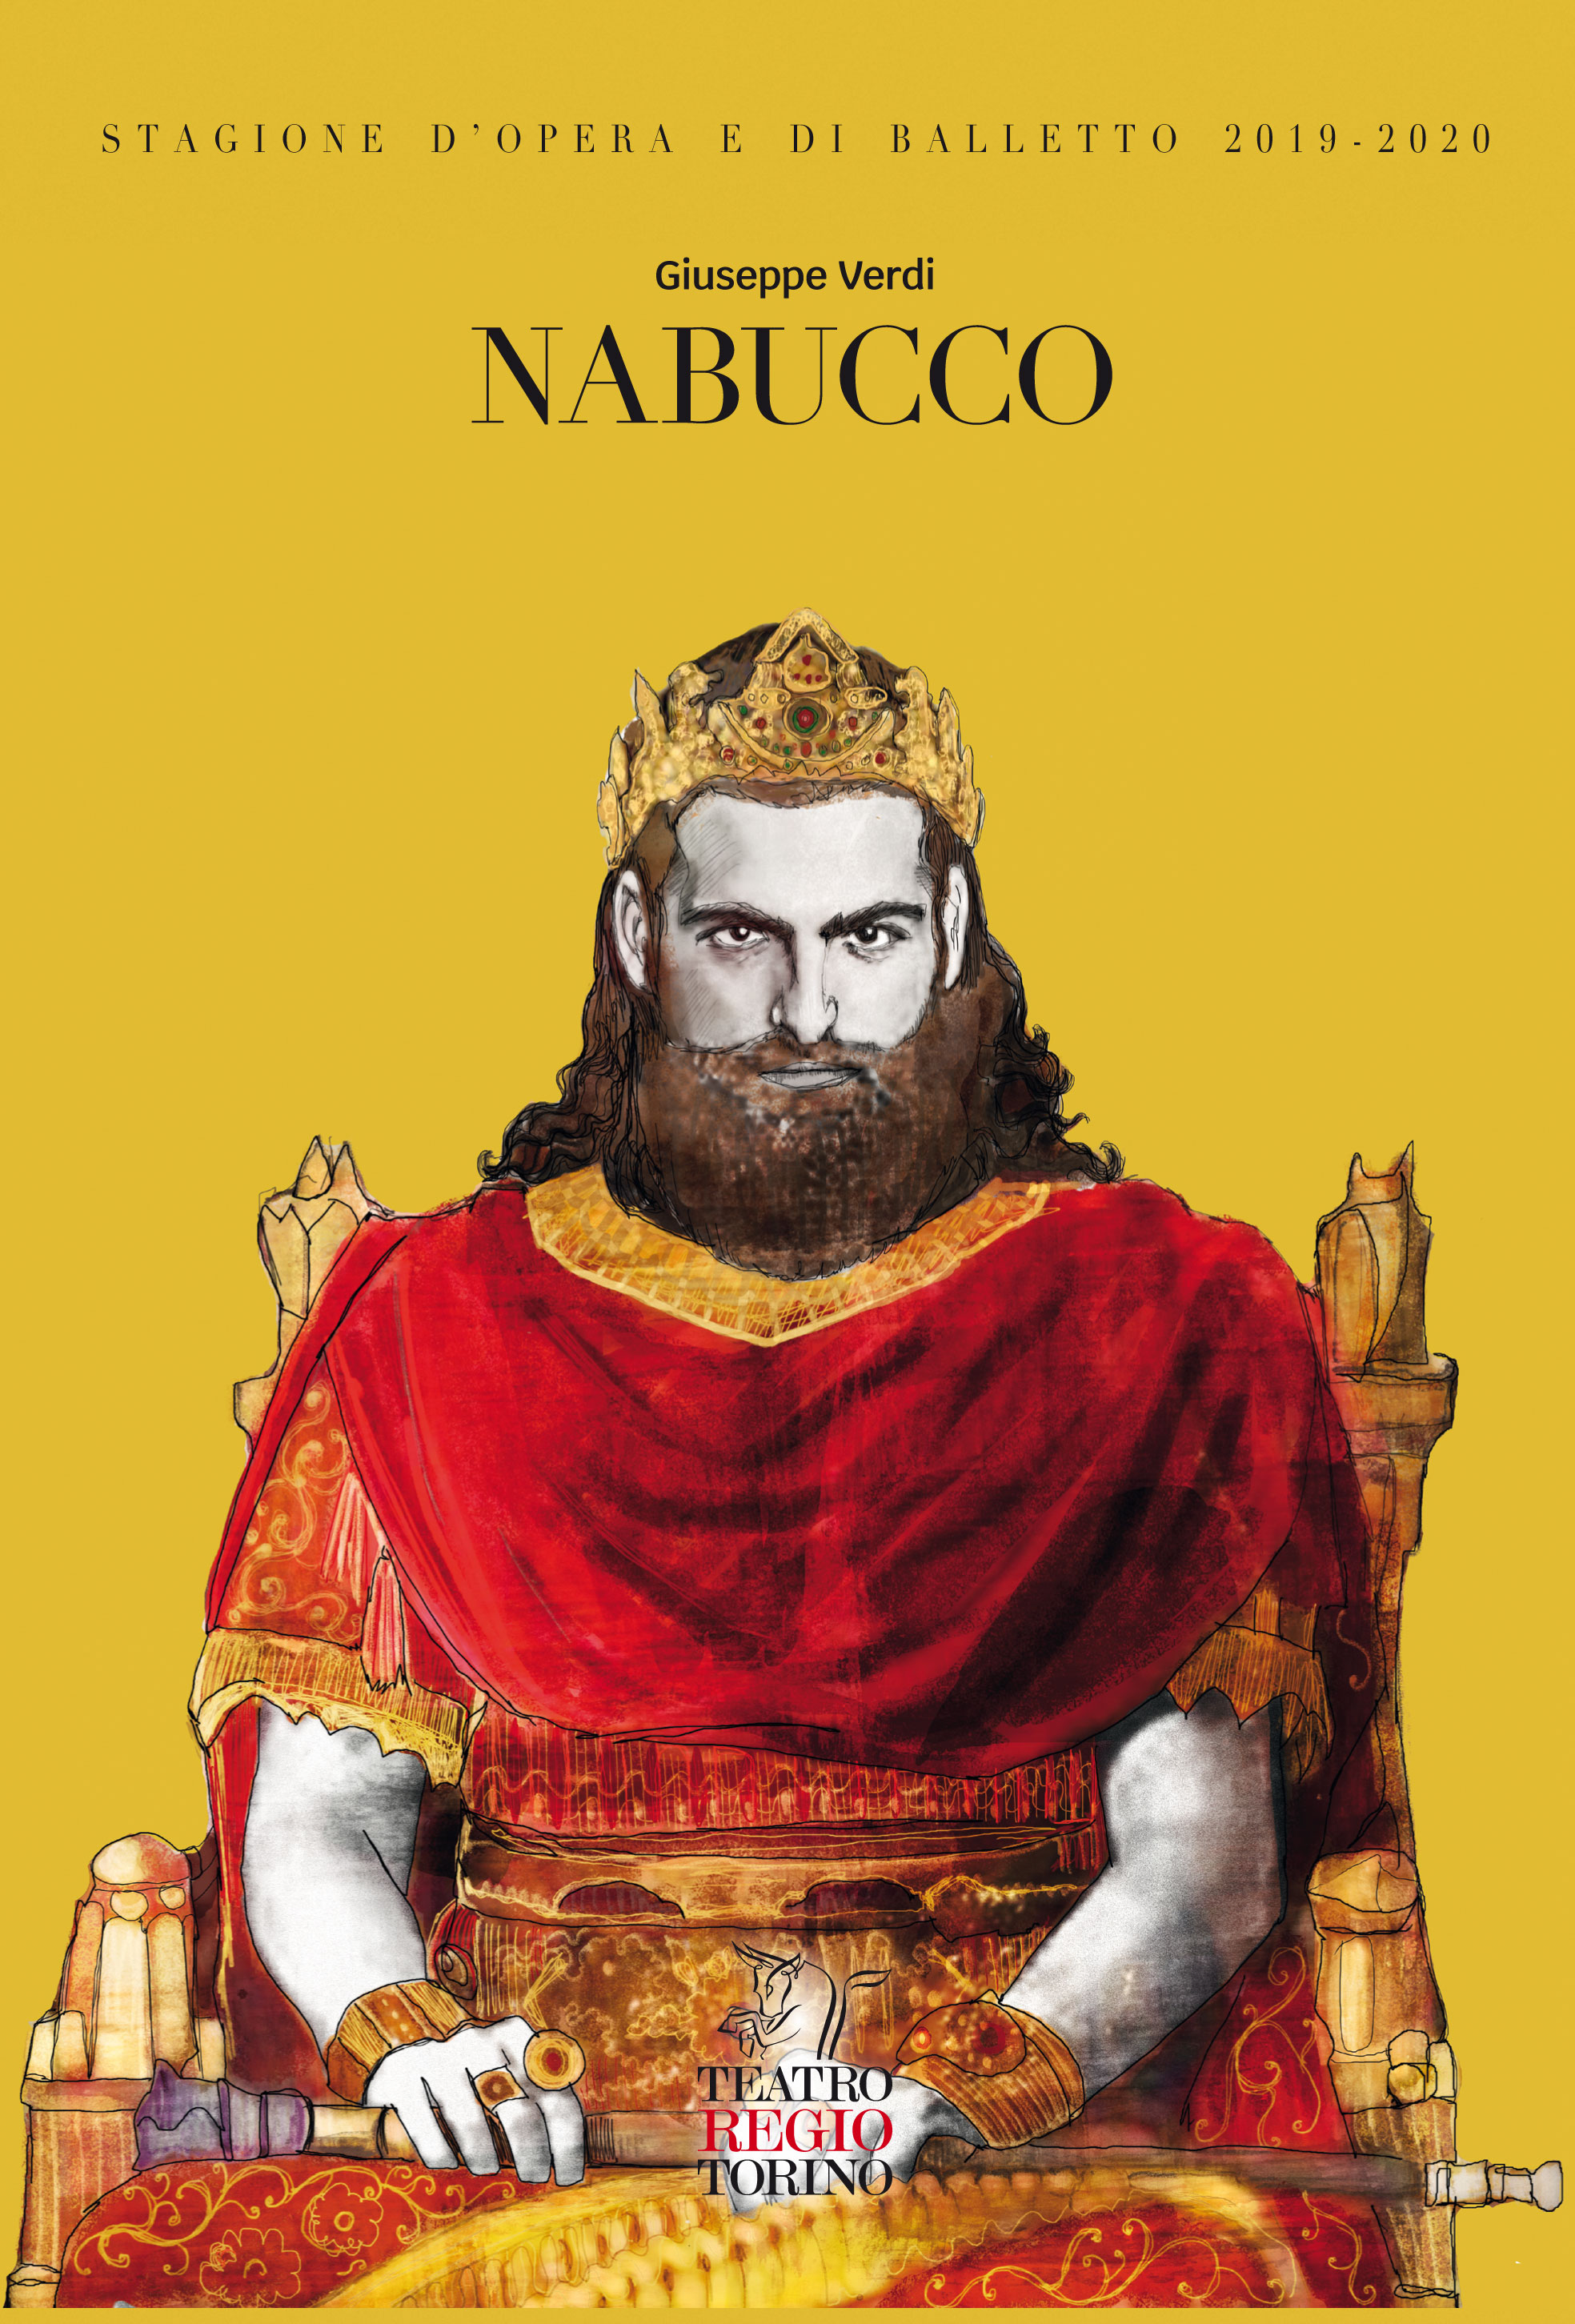 Copertina volume su Nabucco